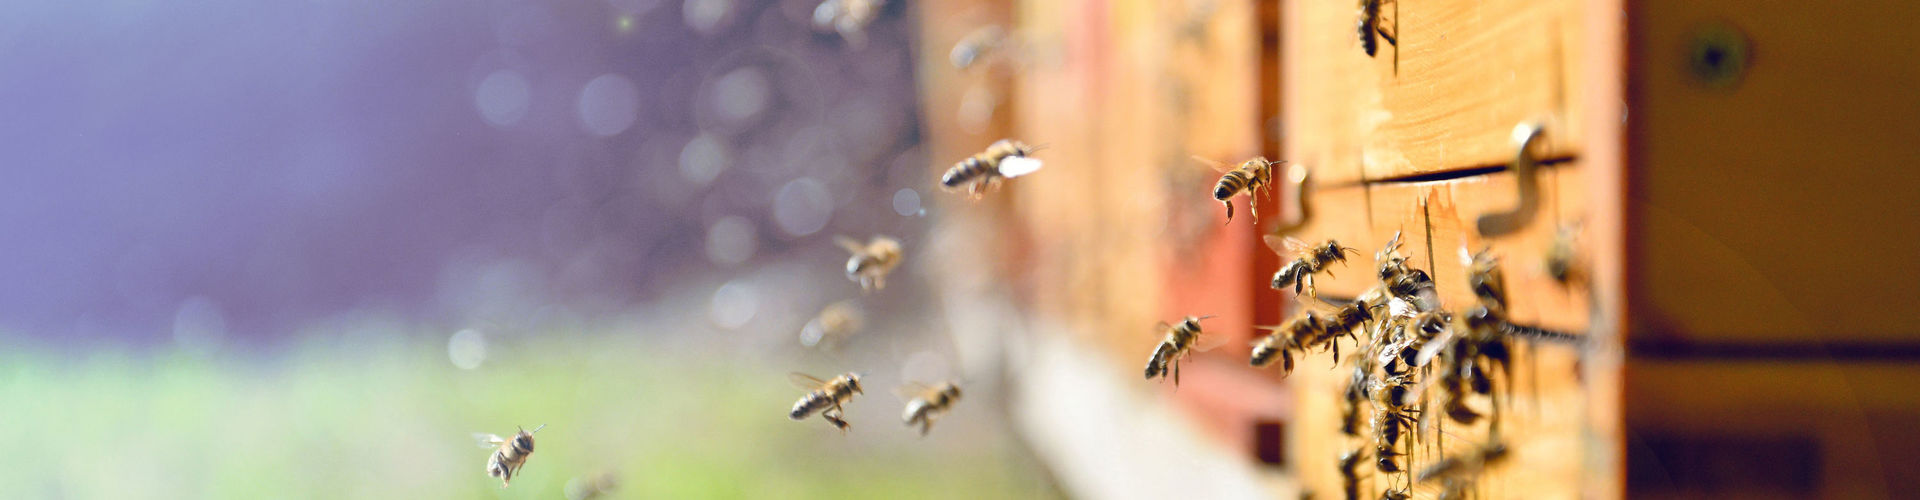 Bienen schwärmen vor einem Bienenstock